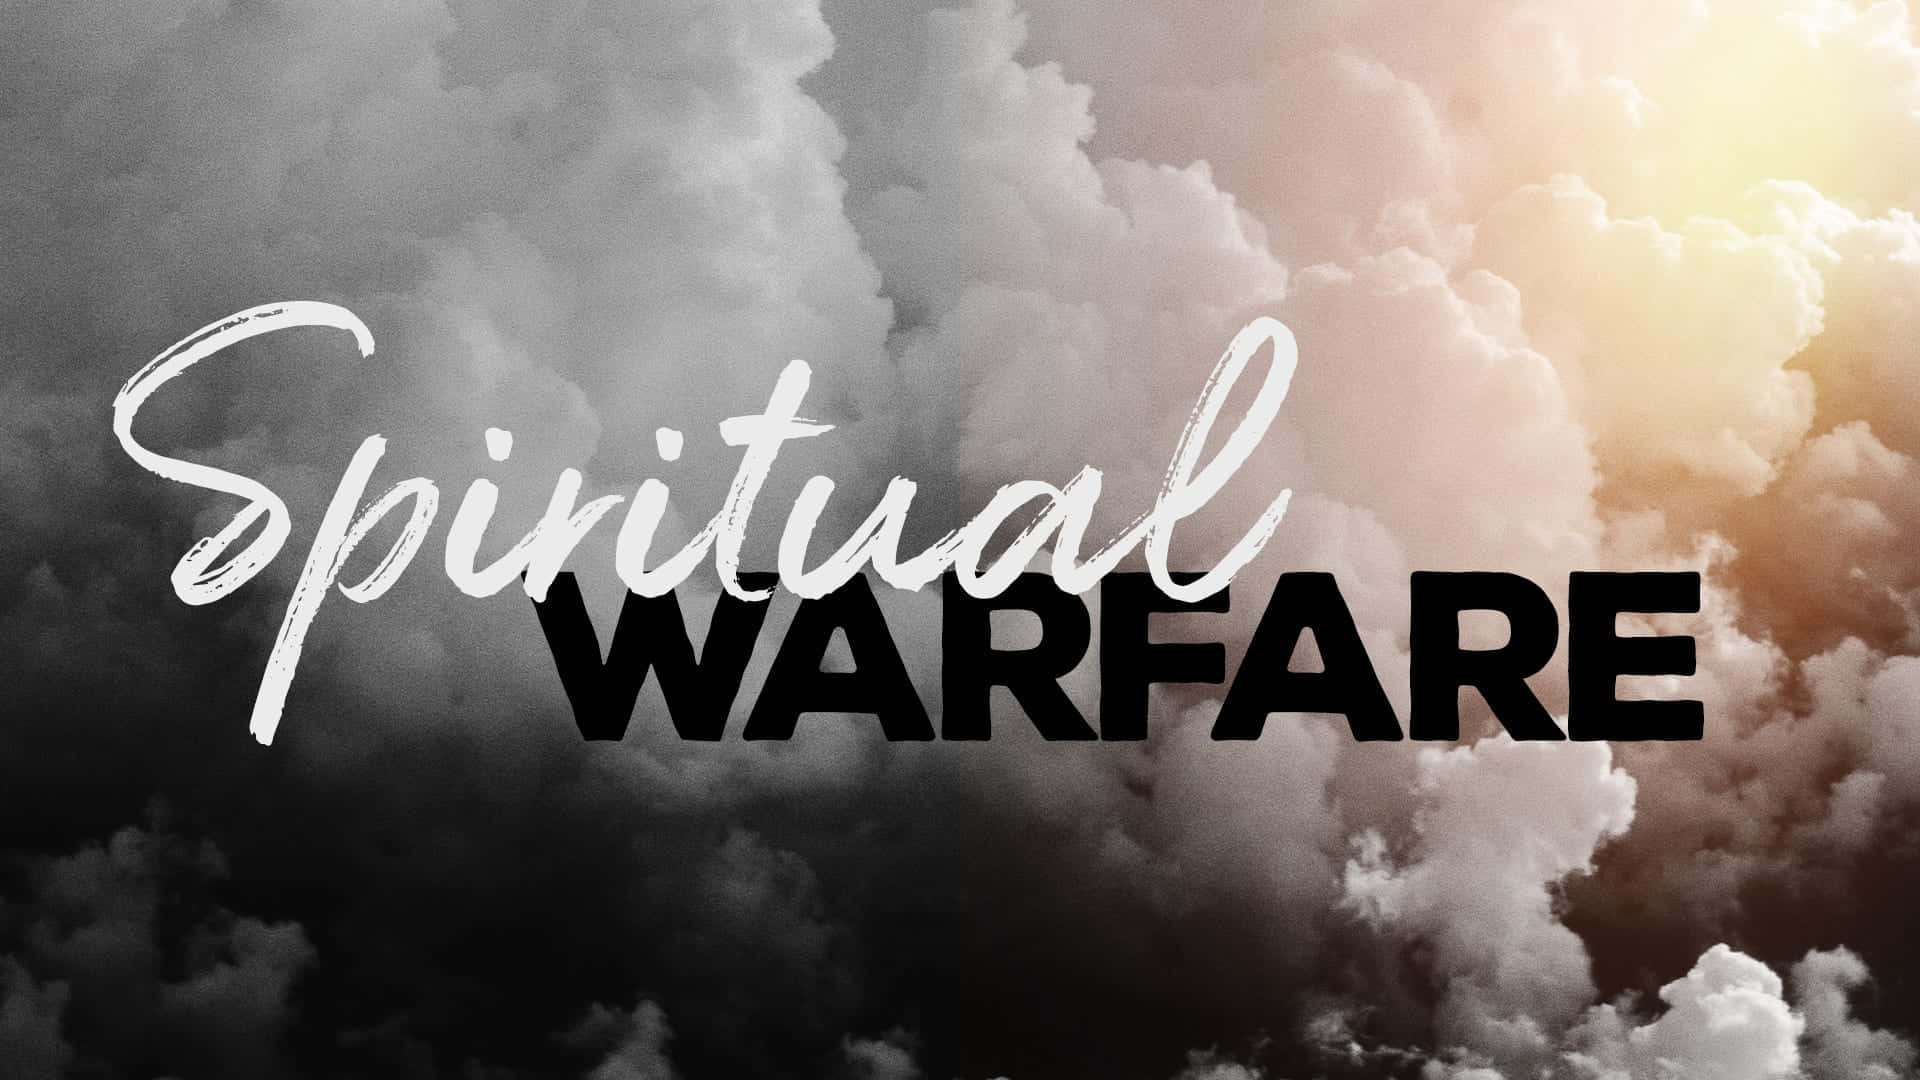 Vencendoa Guerra Espiritual Com Confiança E Fé Em Deus. Papel de Parede